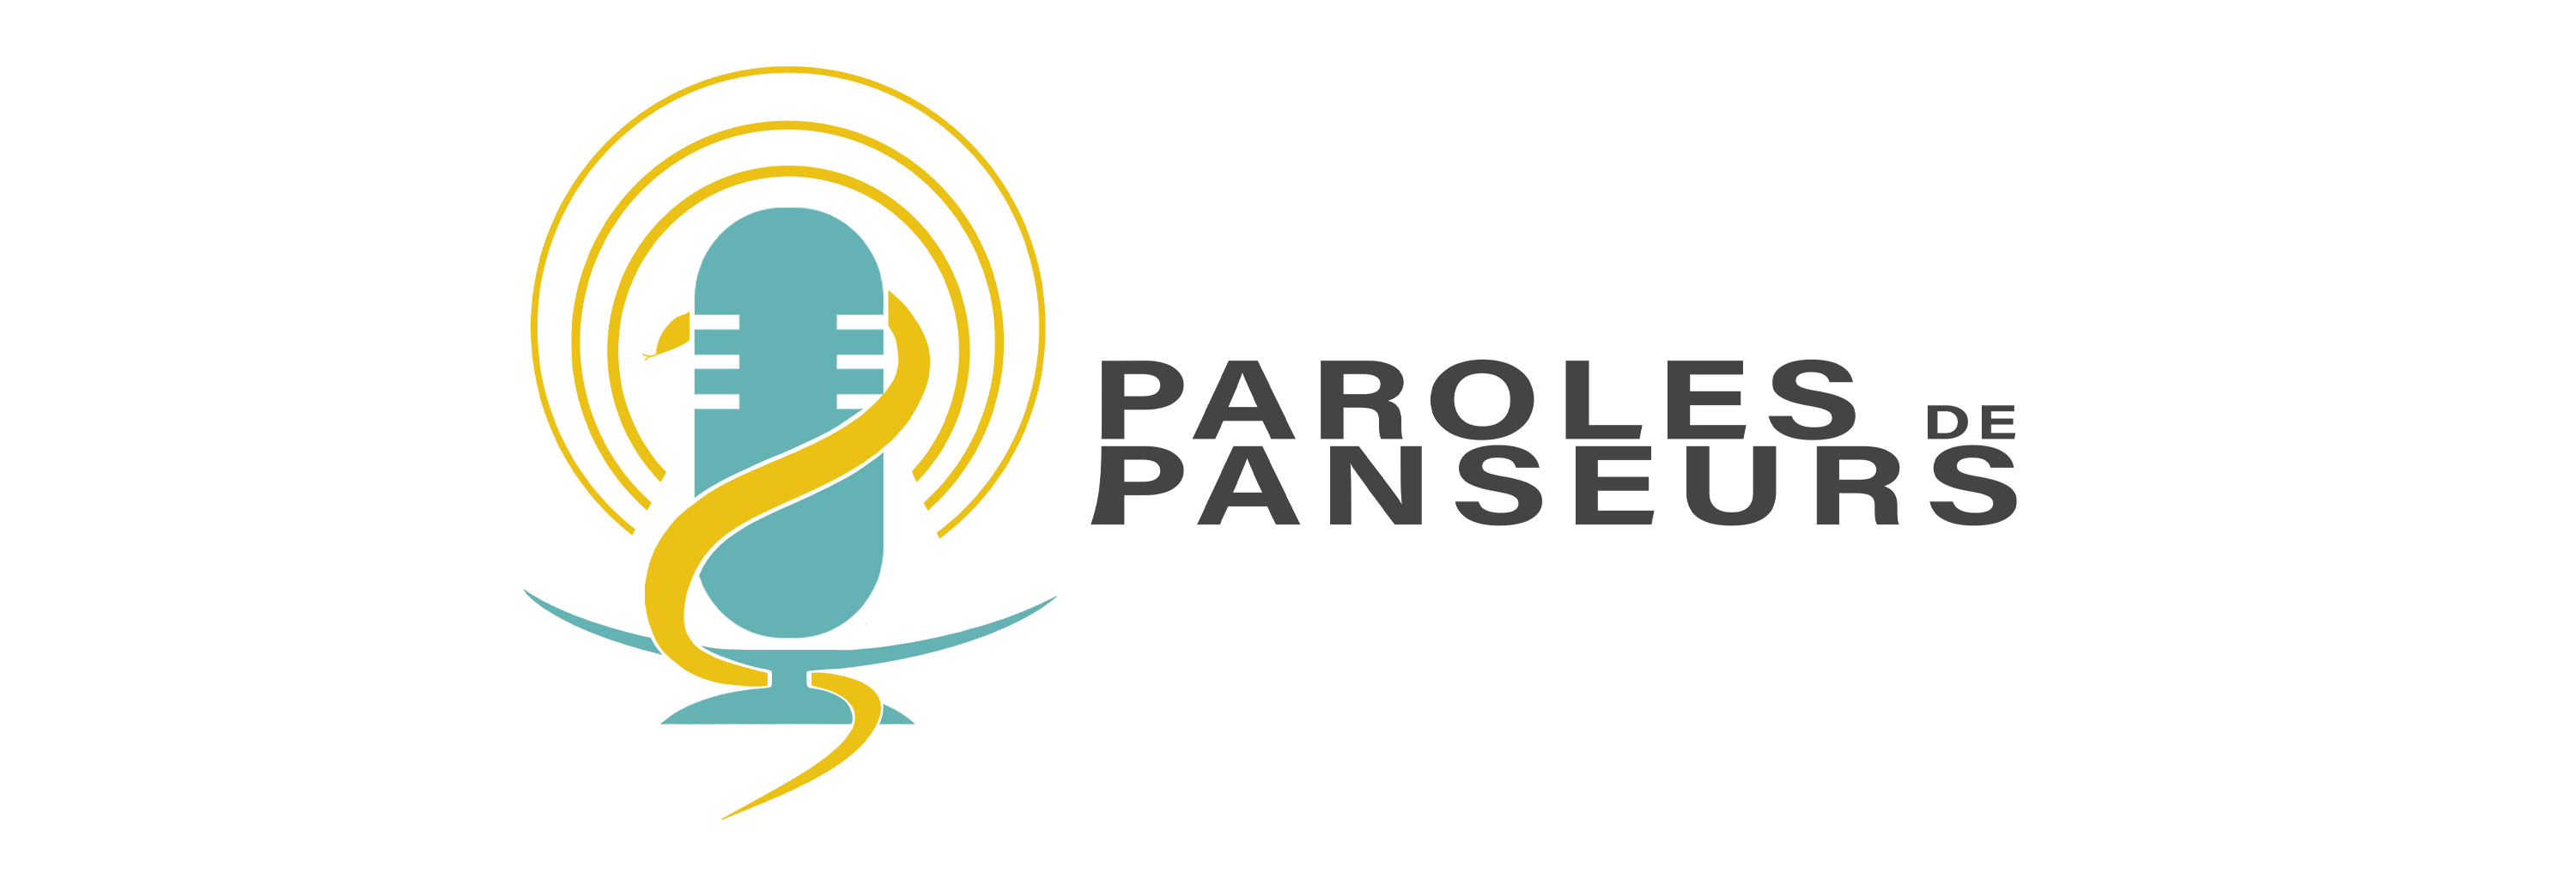 Paroles de Panseurs Logo